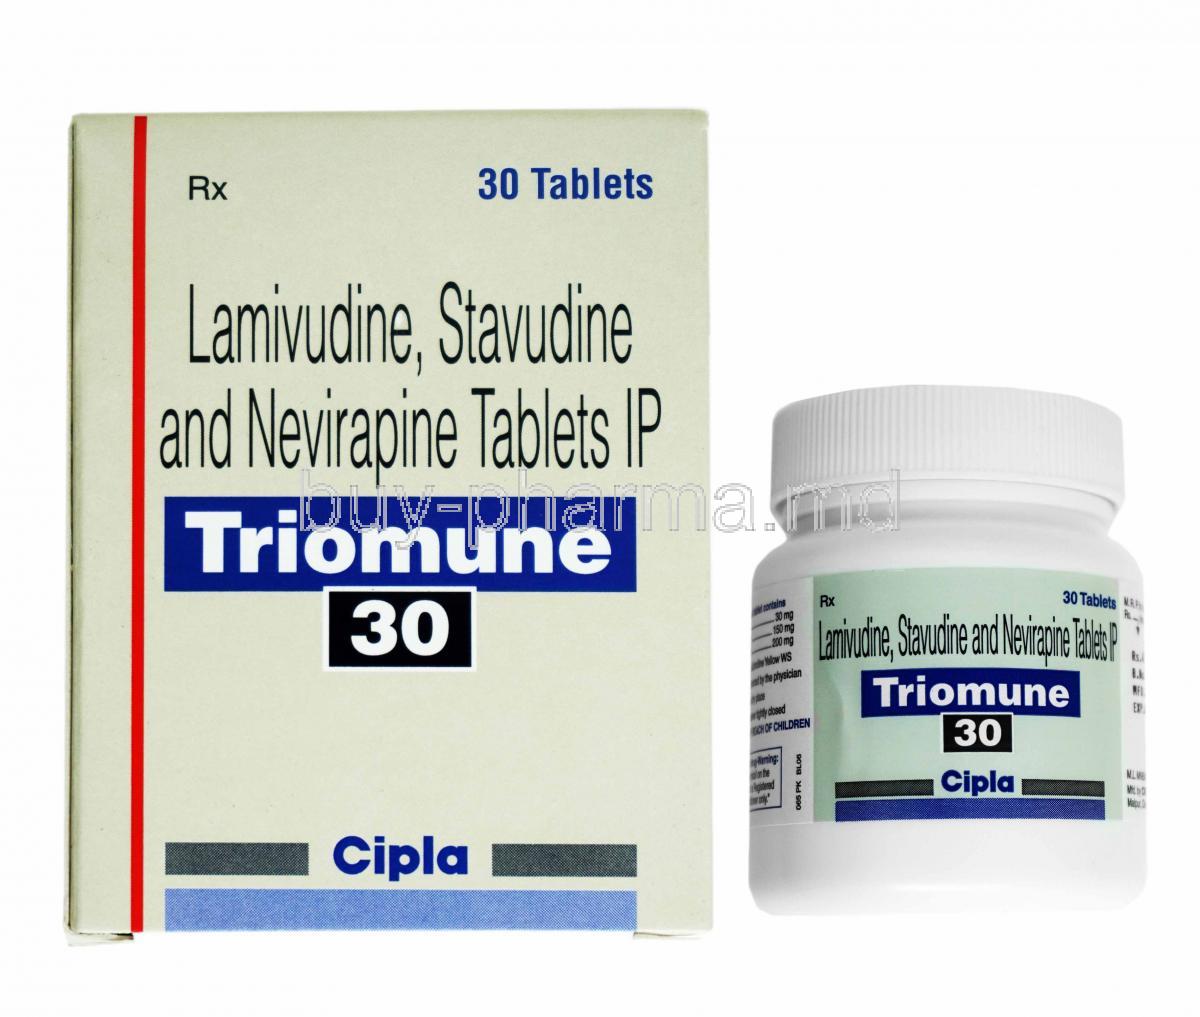 Triomune, Lamivudine 150mg, Stavudine 30mg and Nevirapine 200mg box and bottle